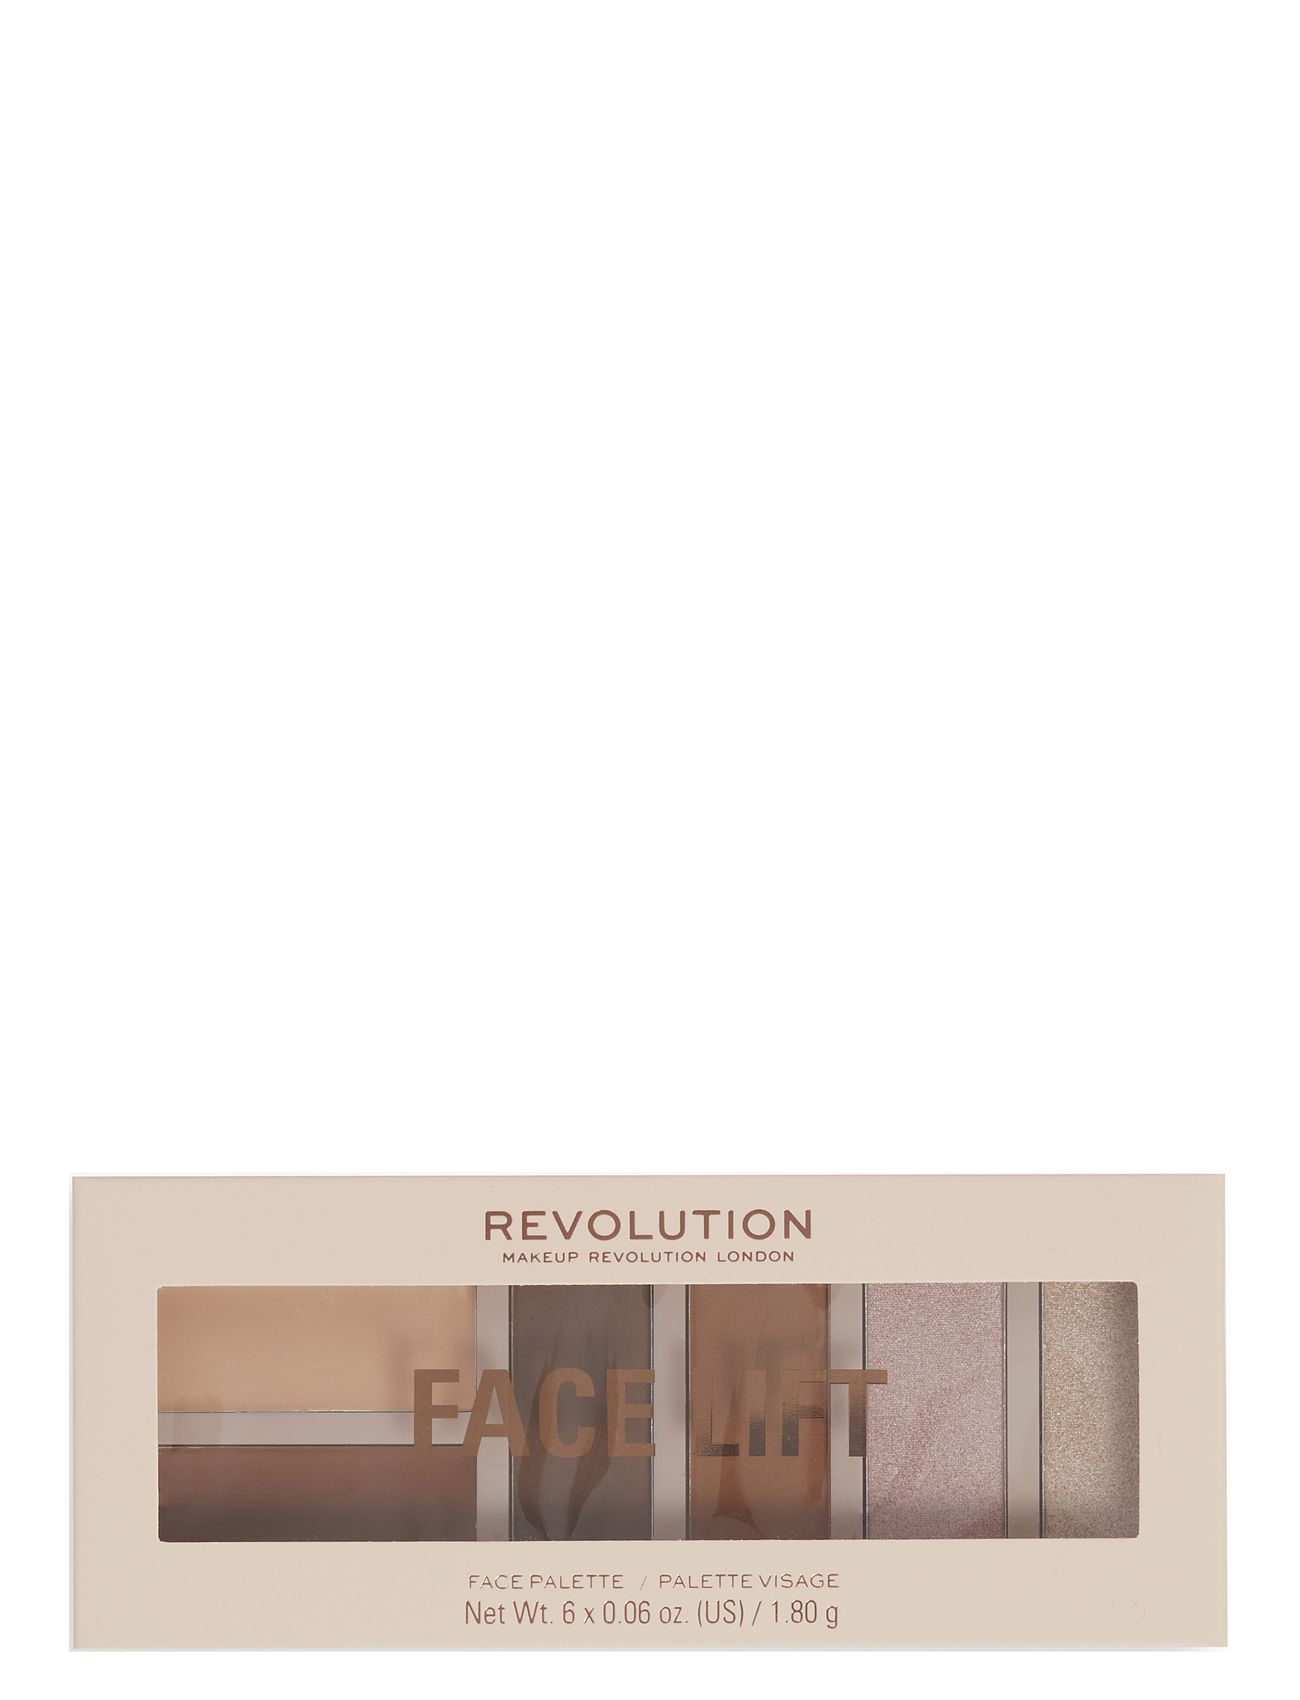 Revolution Face Lift Palette Light To Medium Ögonskugga Palette Smink Multi/patterned Makeup Revolution